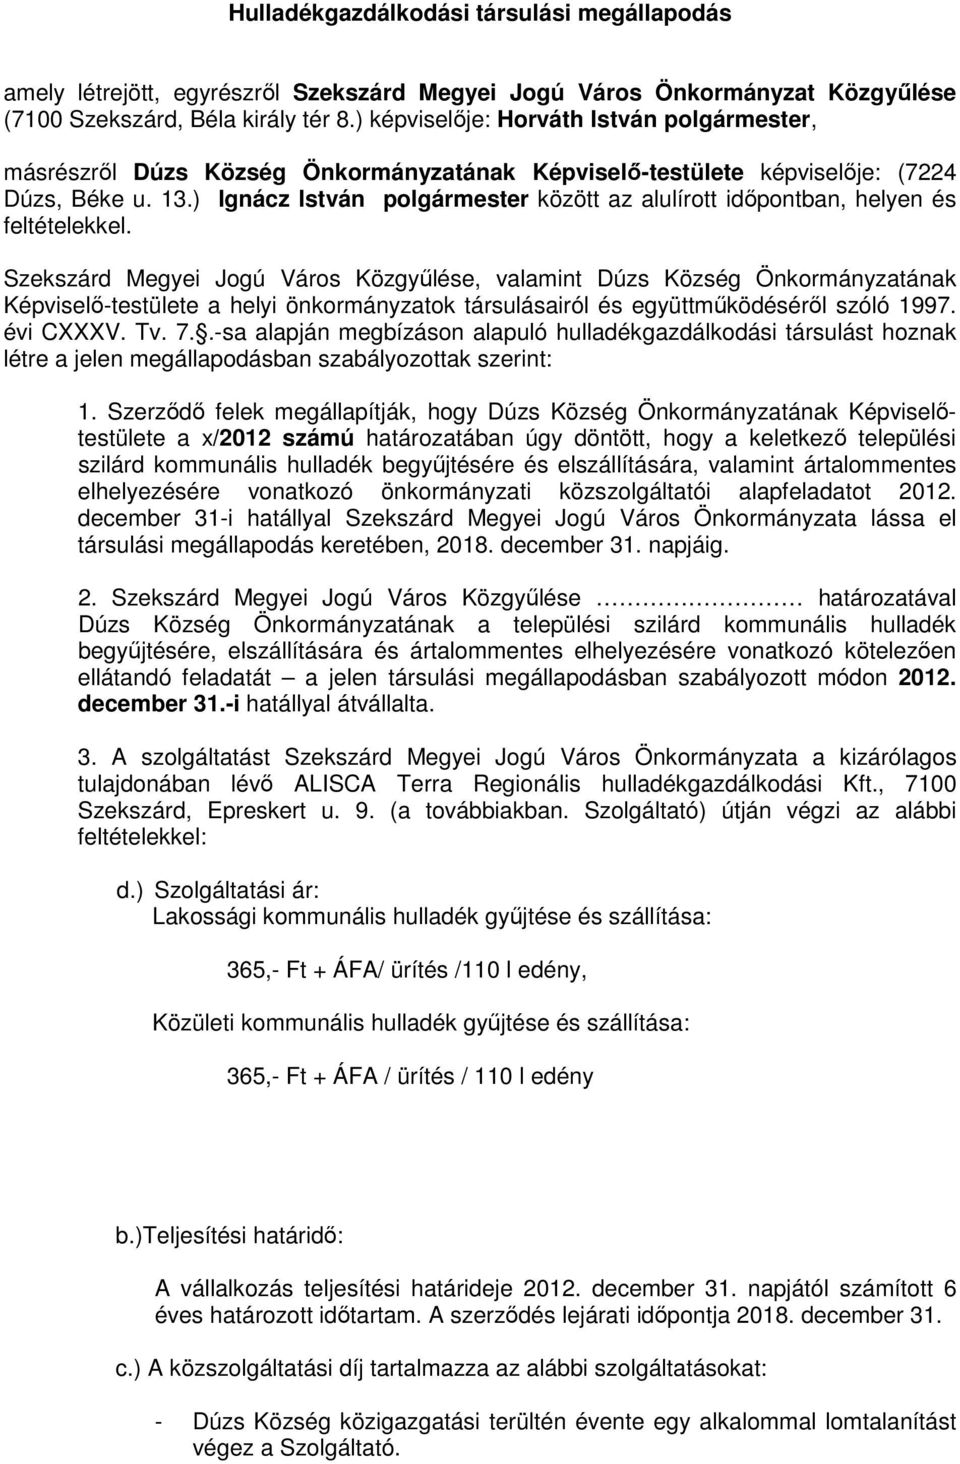 Szekszárd Megyei Jogú Város Közgyőlése, valamint Dúzs Község Önkormányzatának Képviselı-testülete a helyi önkormányzatok társulásairól és együttmőködésérıl szóló 1997. évi CXXXV. Tv. 7.